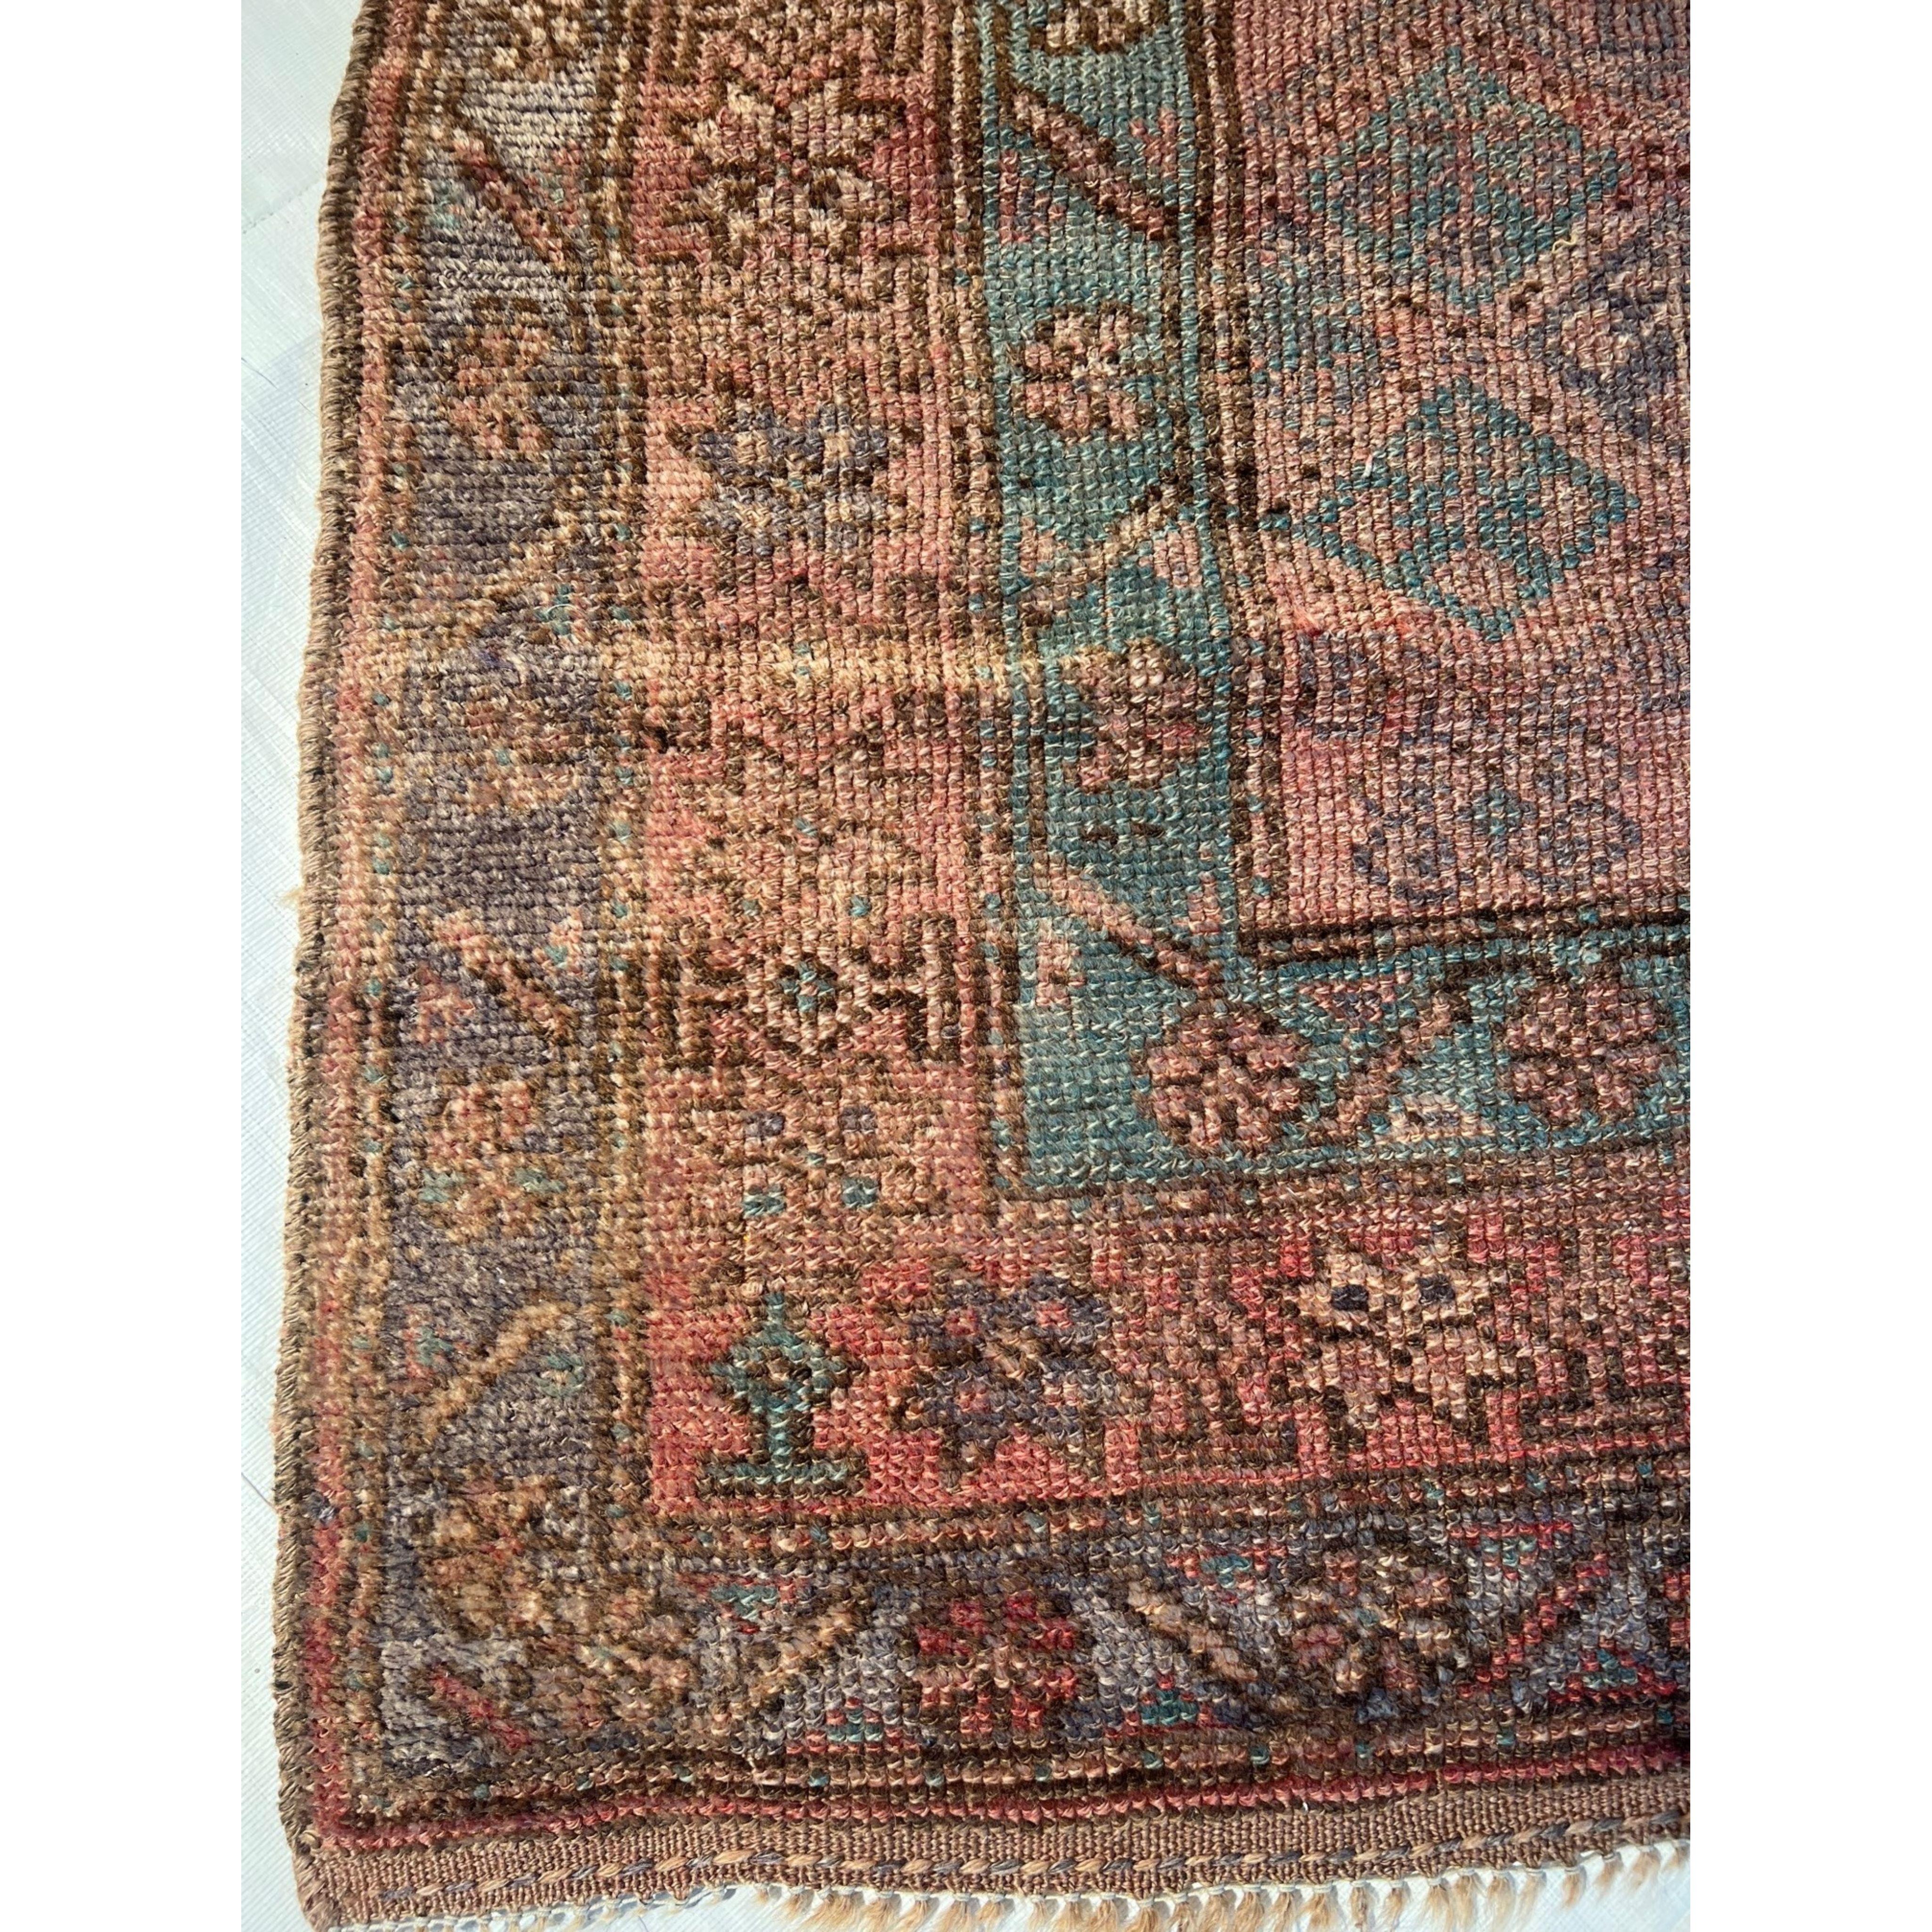 Les anciens tapis turcs Oushak sont tissés dans l'ouest de la Turquie depuis le début de la période ottomane. Les historiens leur attribuent la plupart des grands chefs-d'œuvre du tissage des tapis turcs du XVe au XVIIe siècle. Lorsque les choses